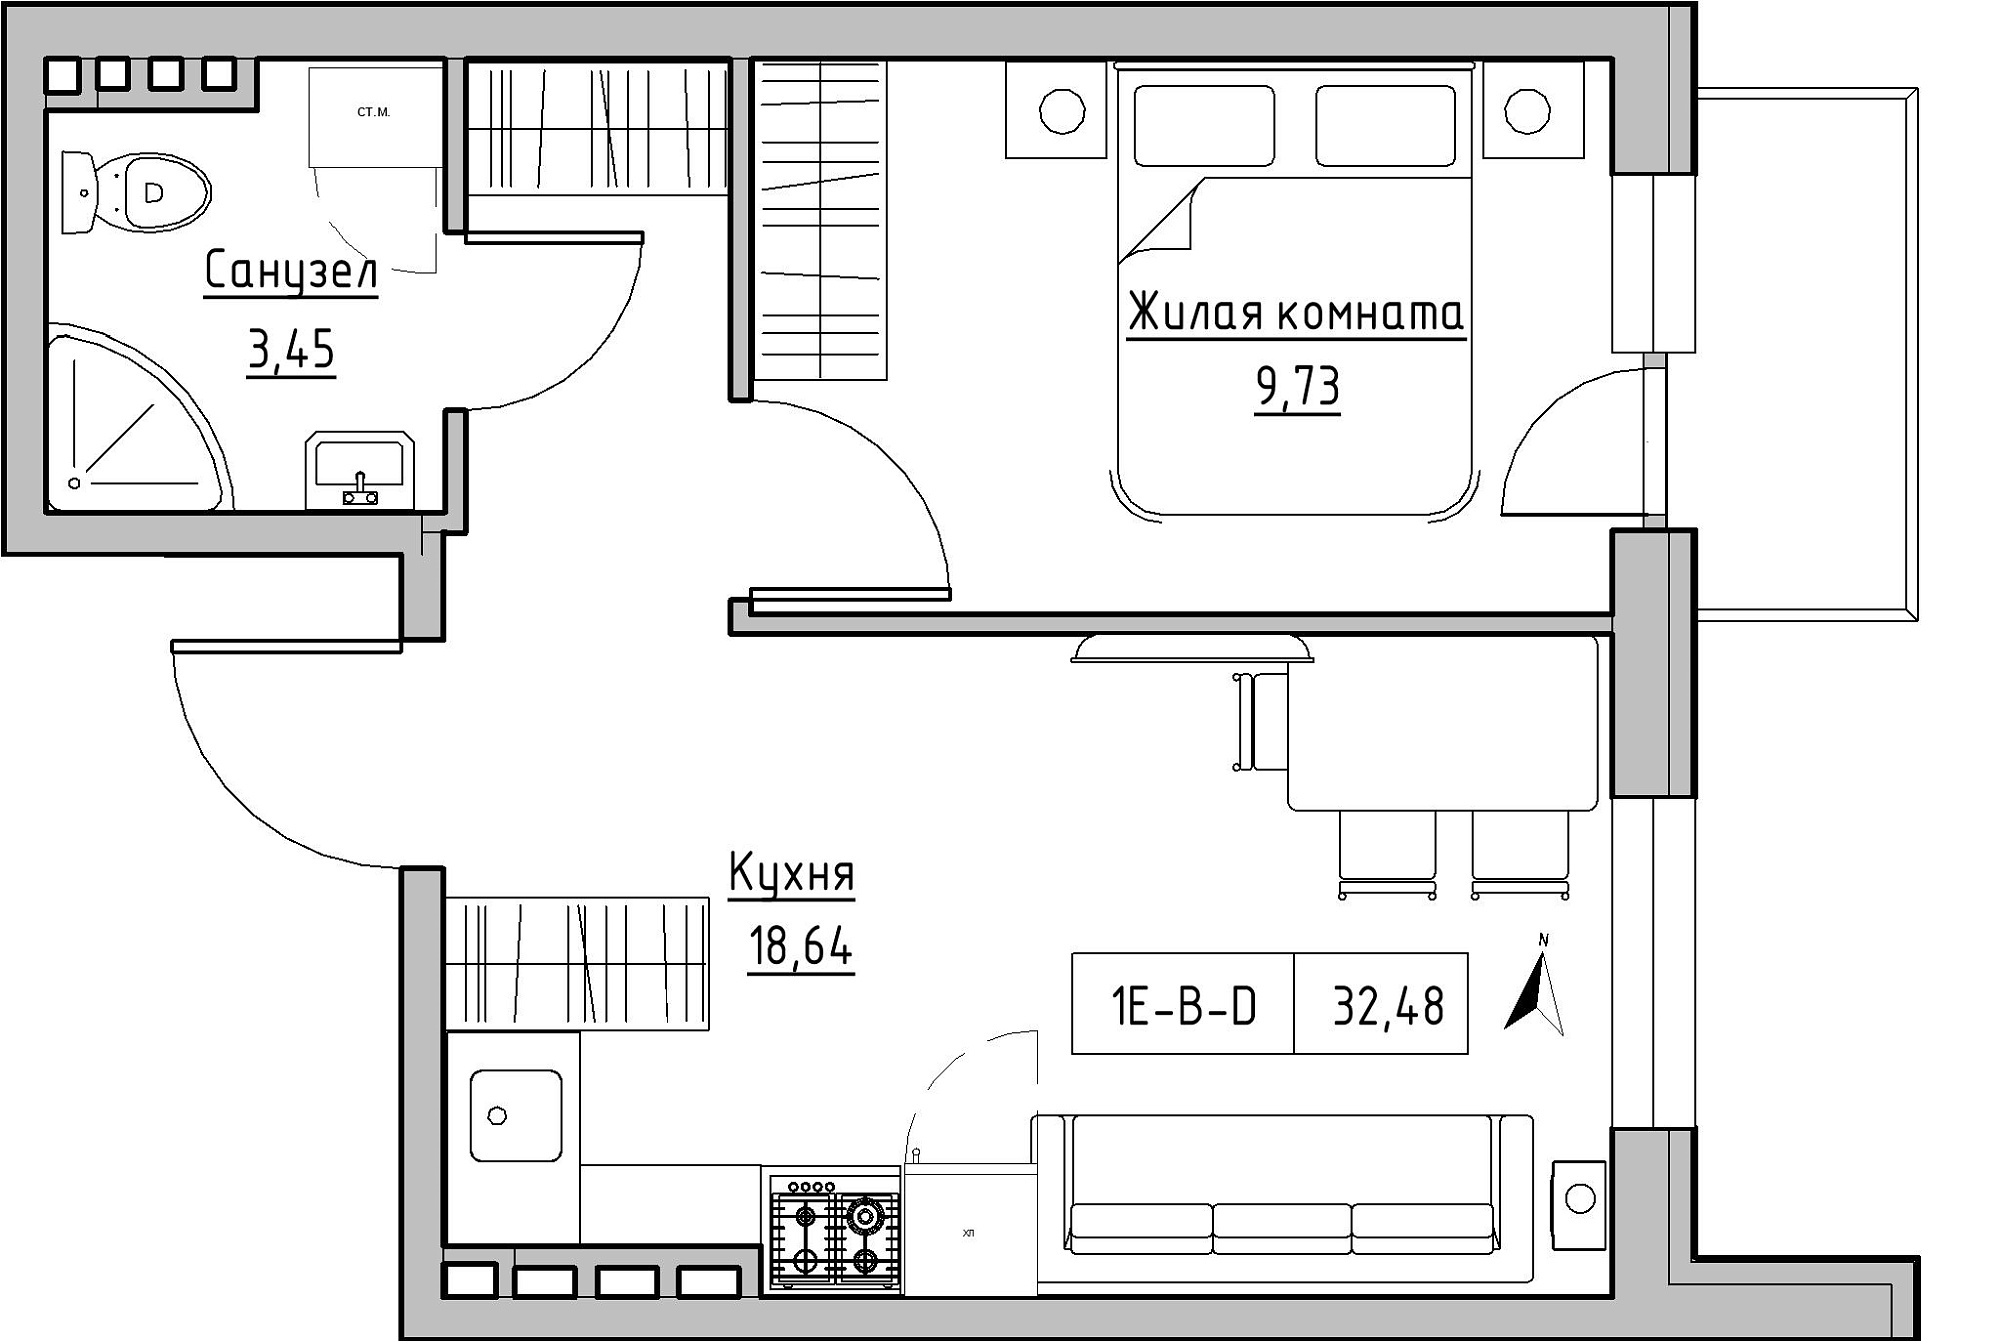 Планування 1-к квартира площею 32.48м2, KS-024-03/0015.